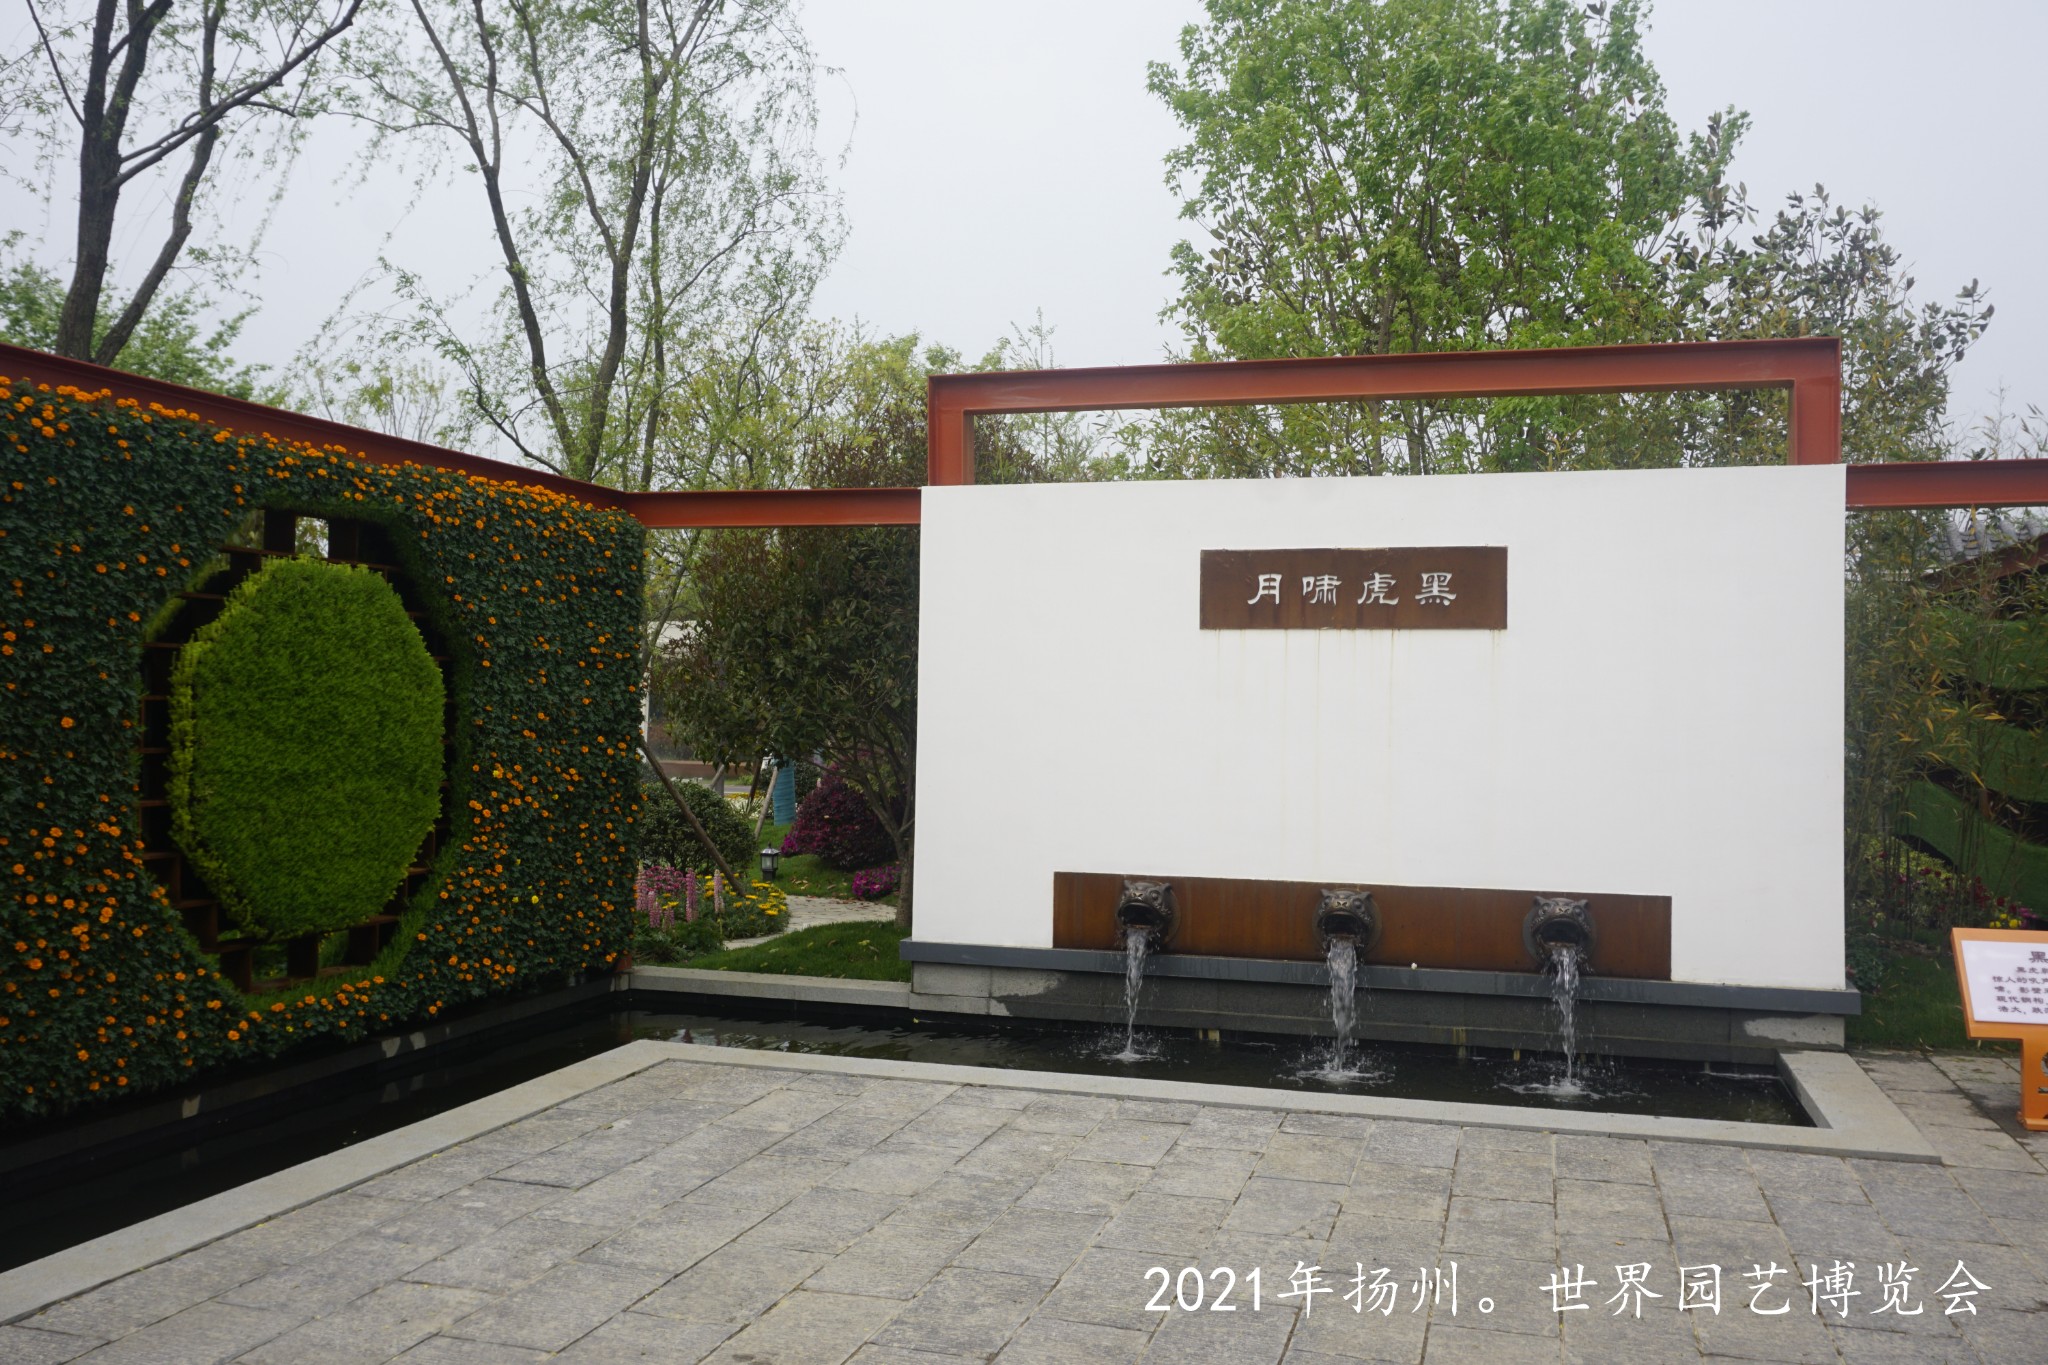 参观扬州世界园艺博览会欣赏国内及世界顶级园林艺术